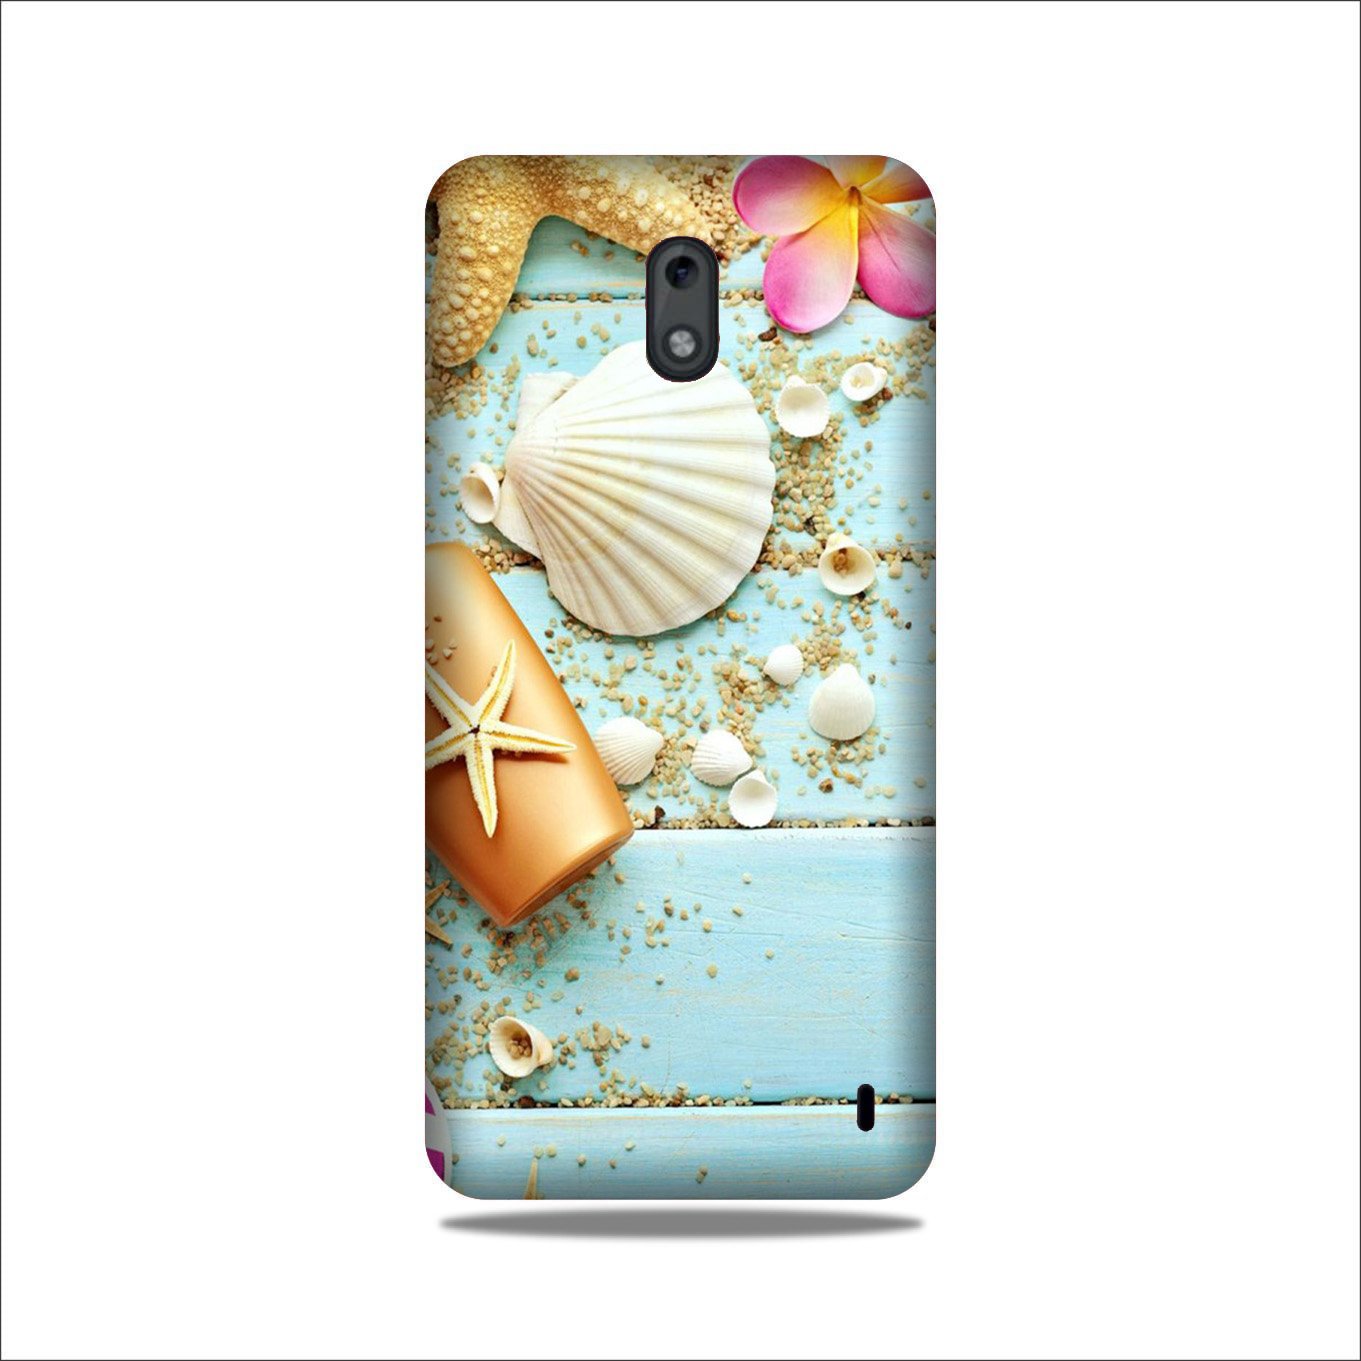 Sea Shells Case for Nokia 3